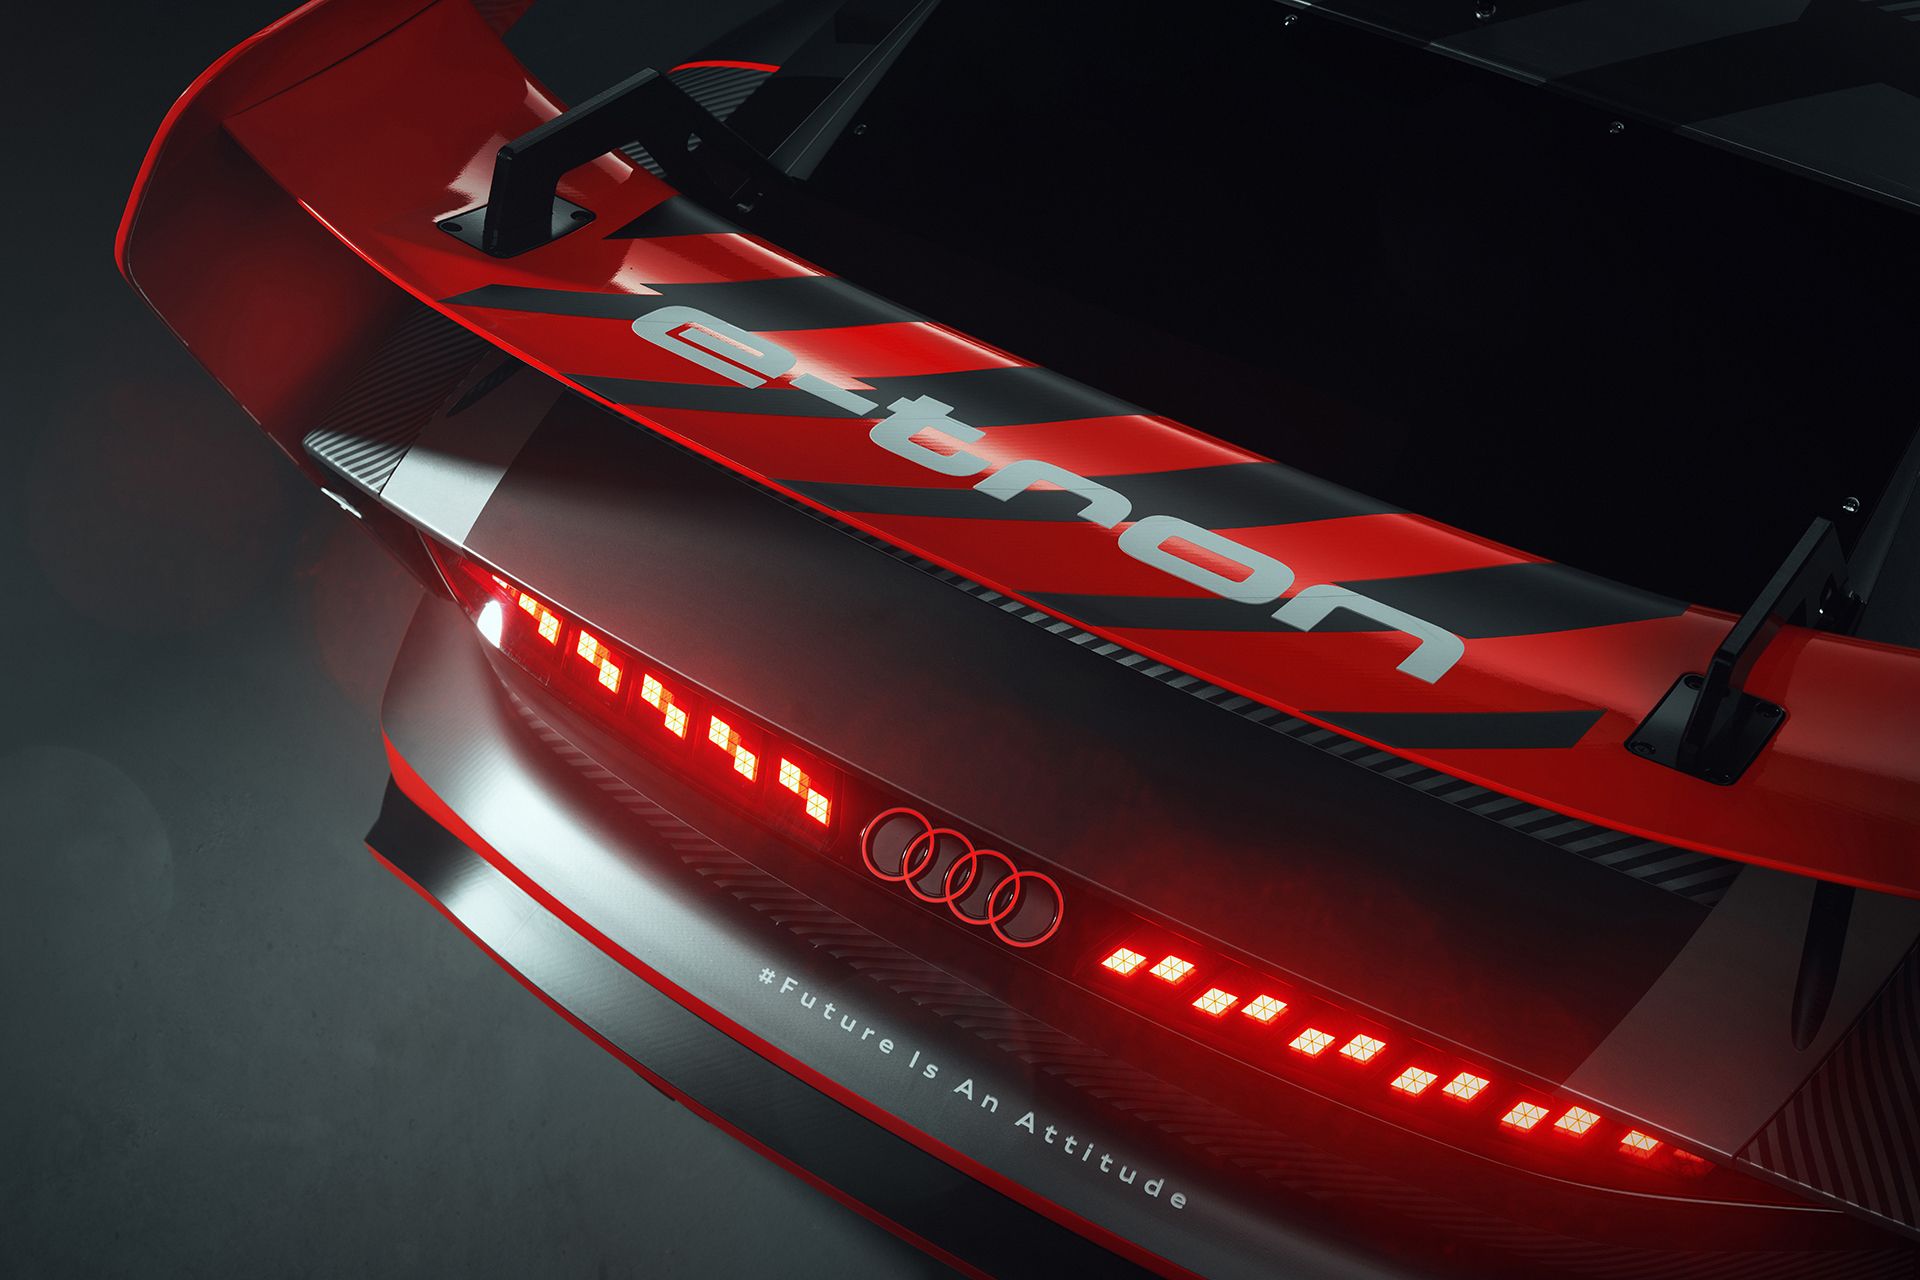 Dettaglio dello spoiler posteriore di Audi S1 Hoonitron